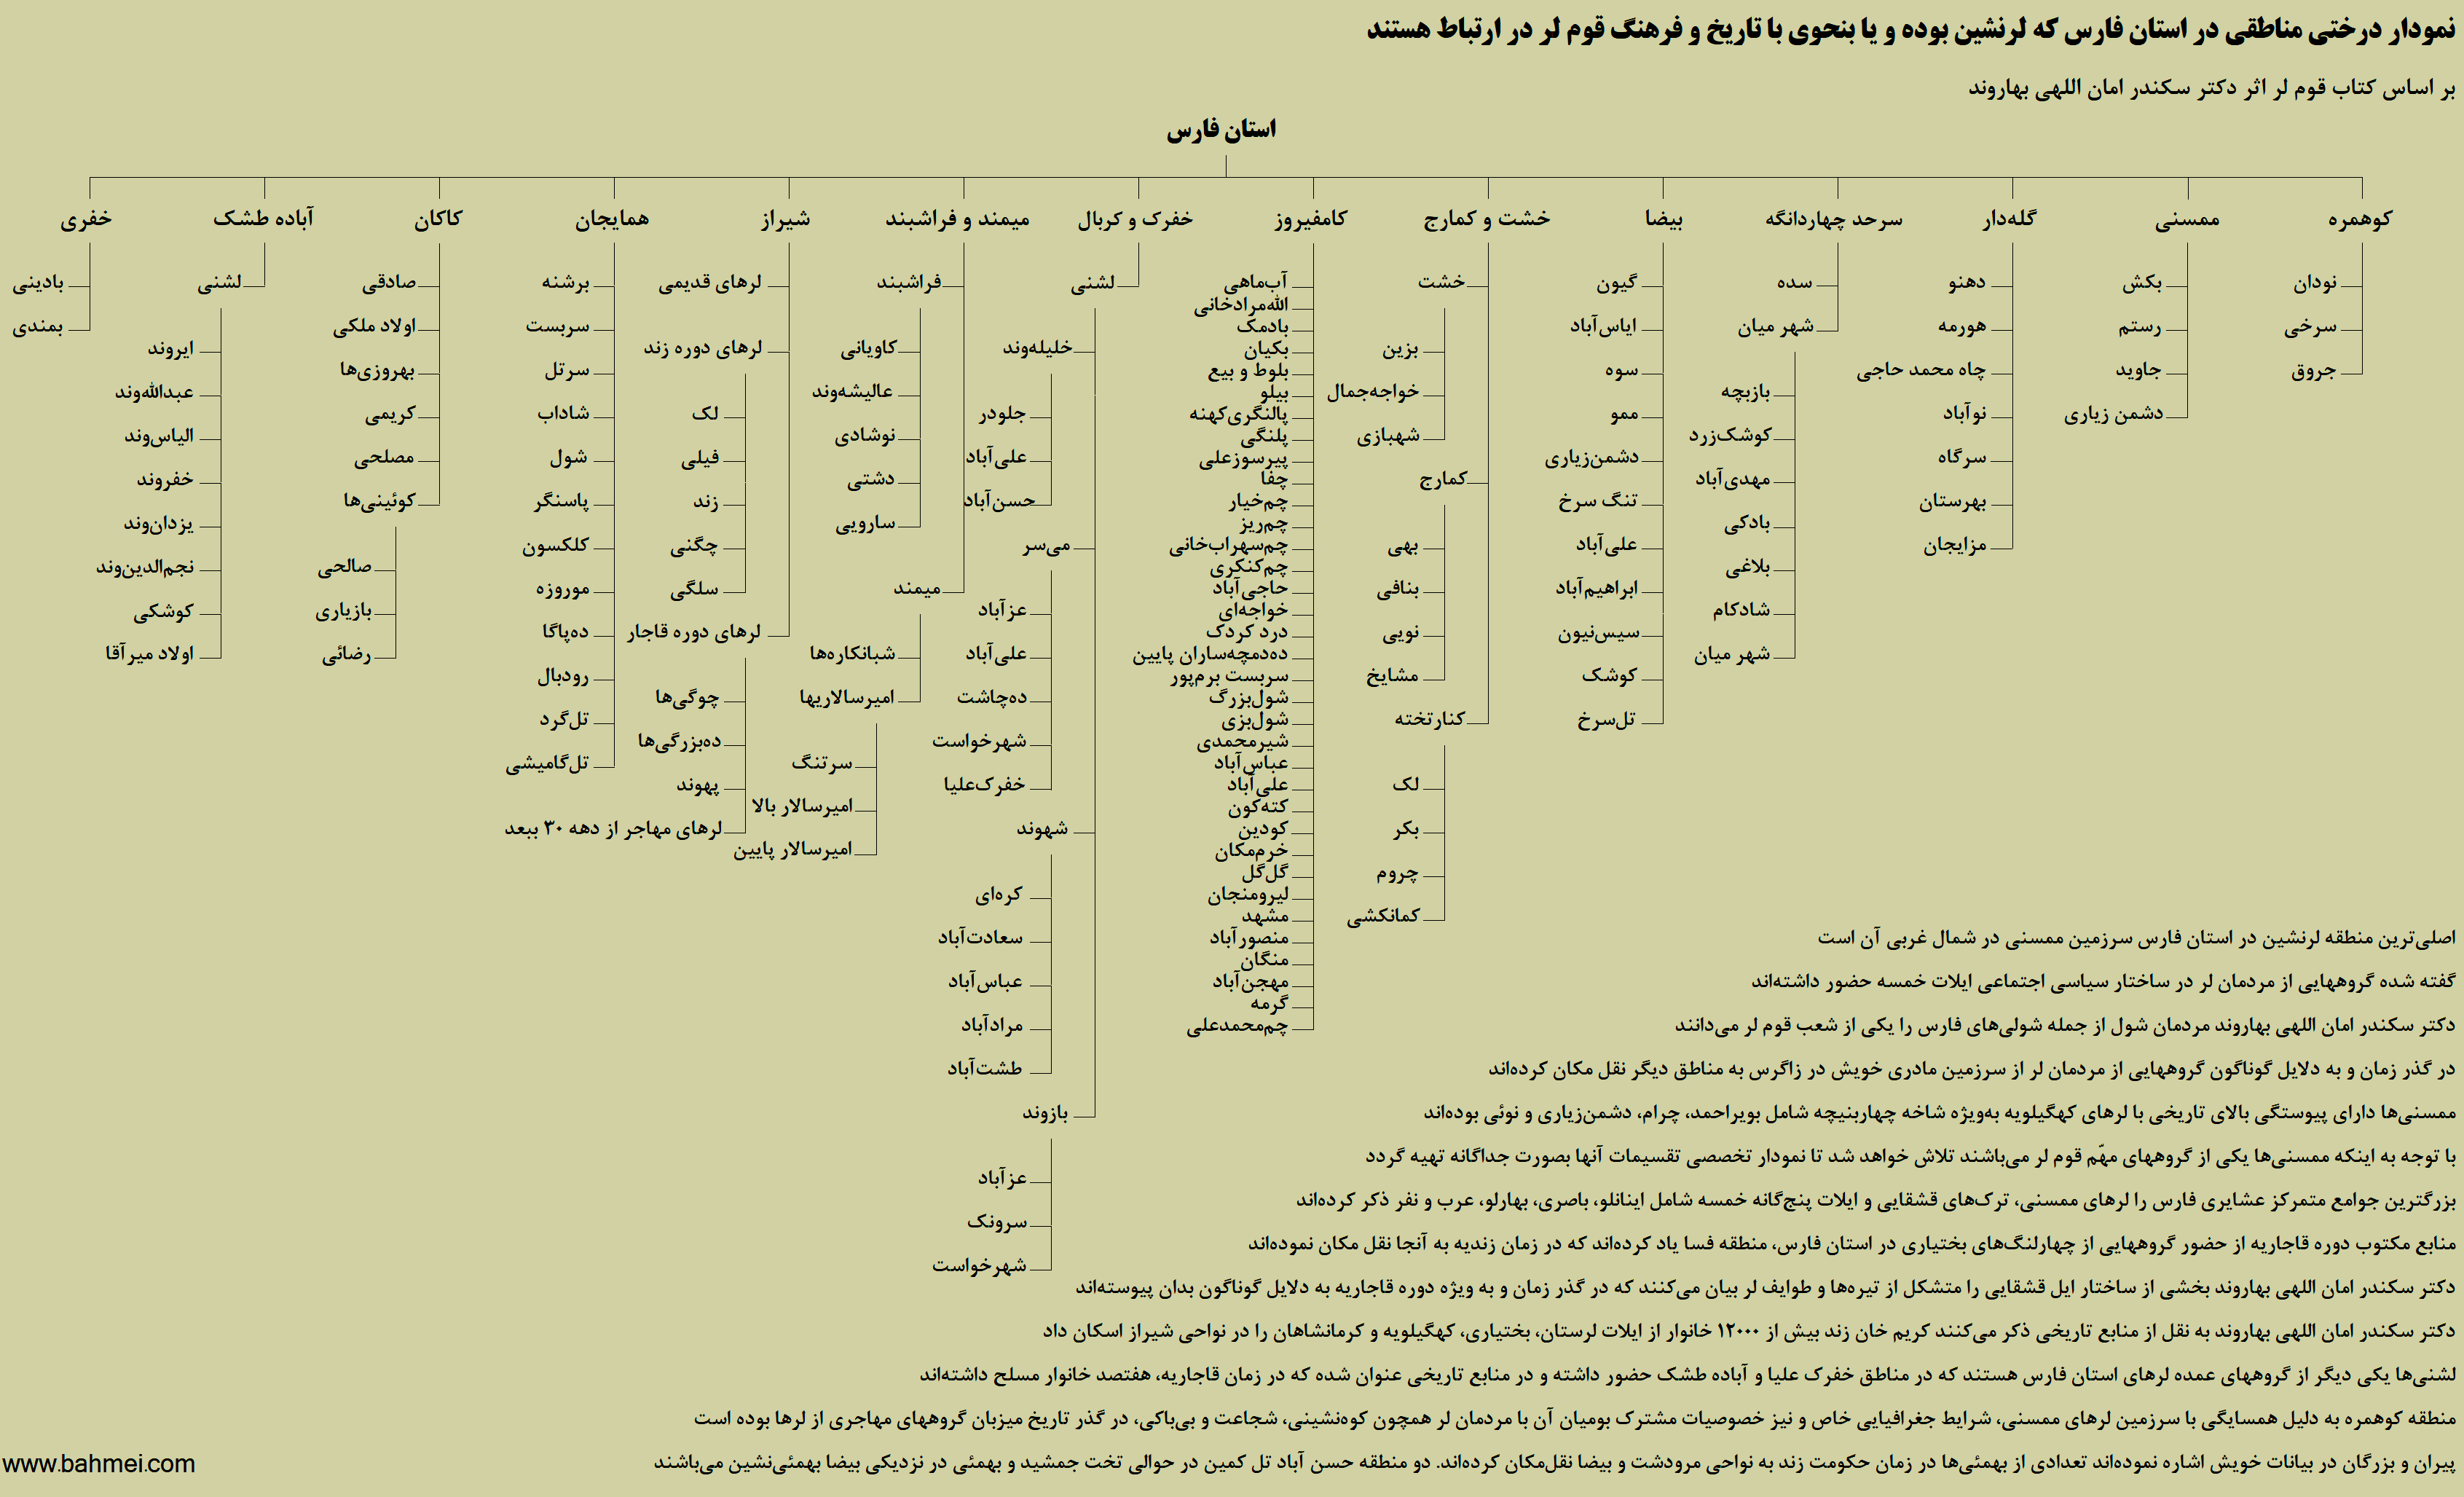 نمودار درختی قوم لر و استان فارس